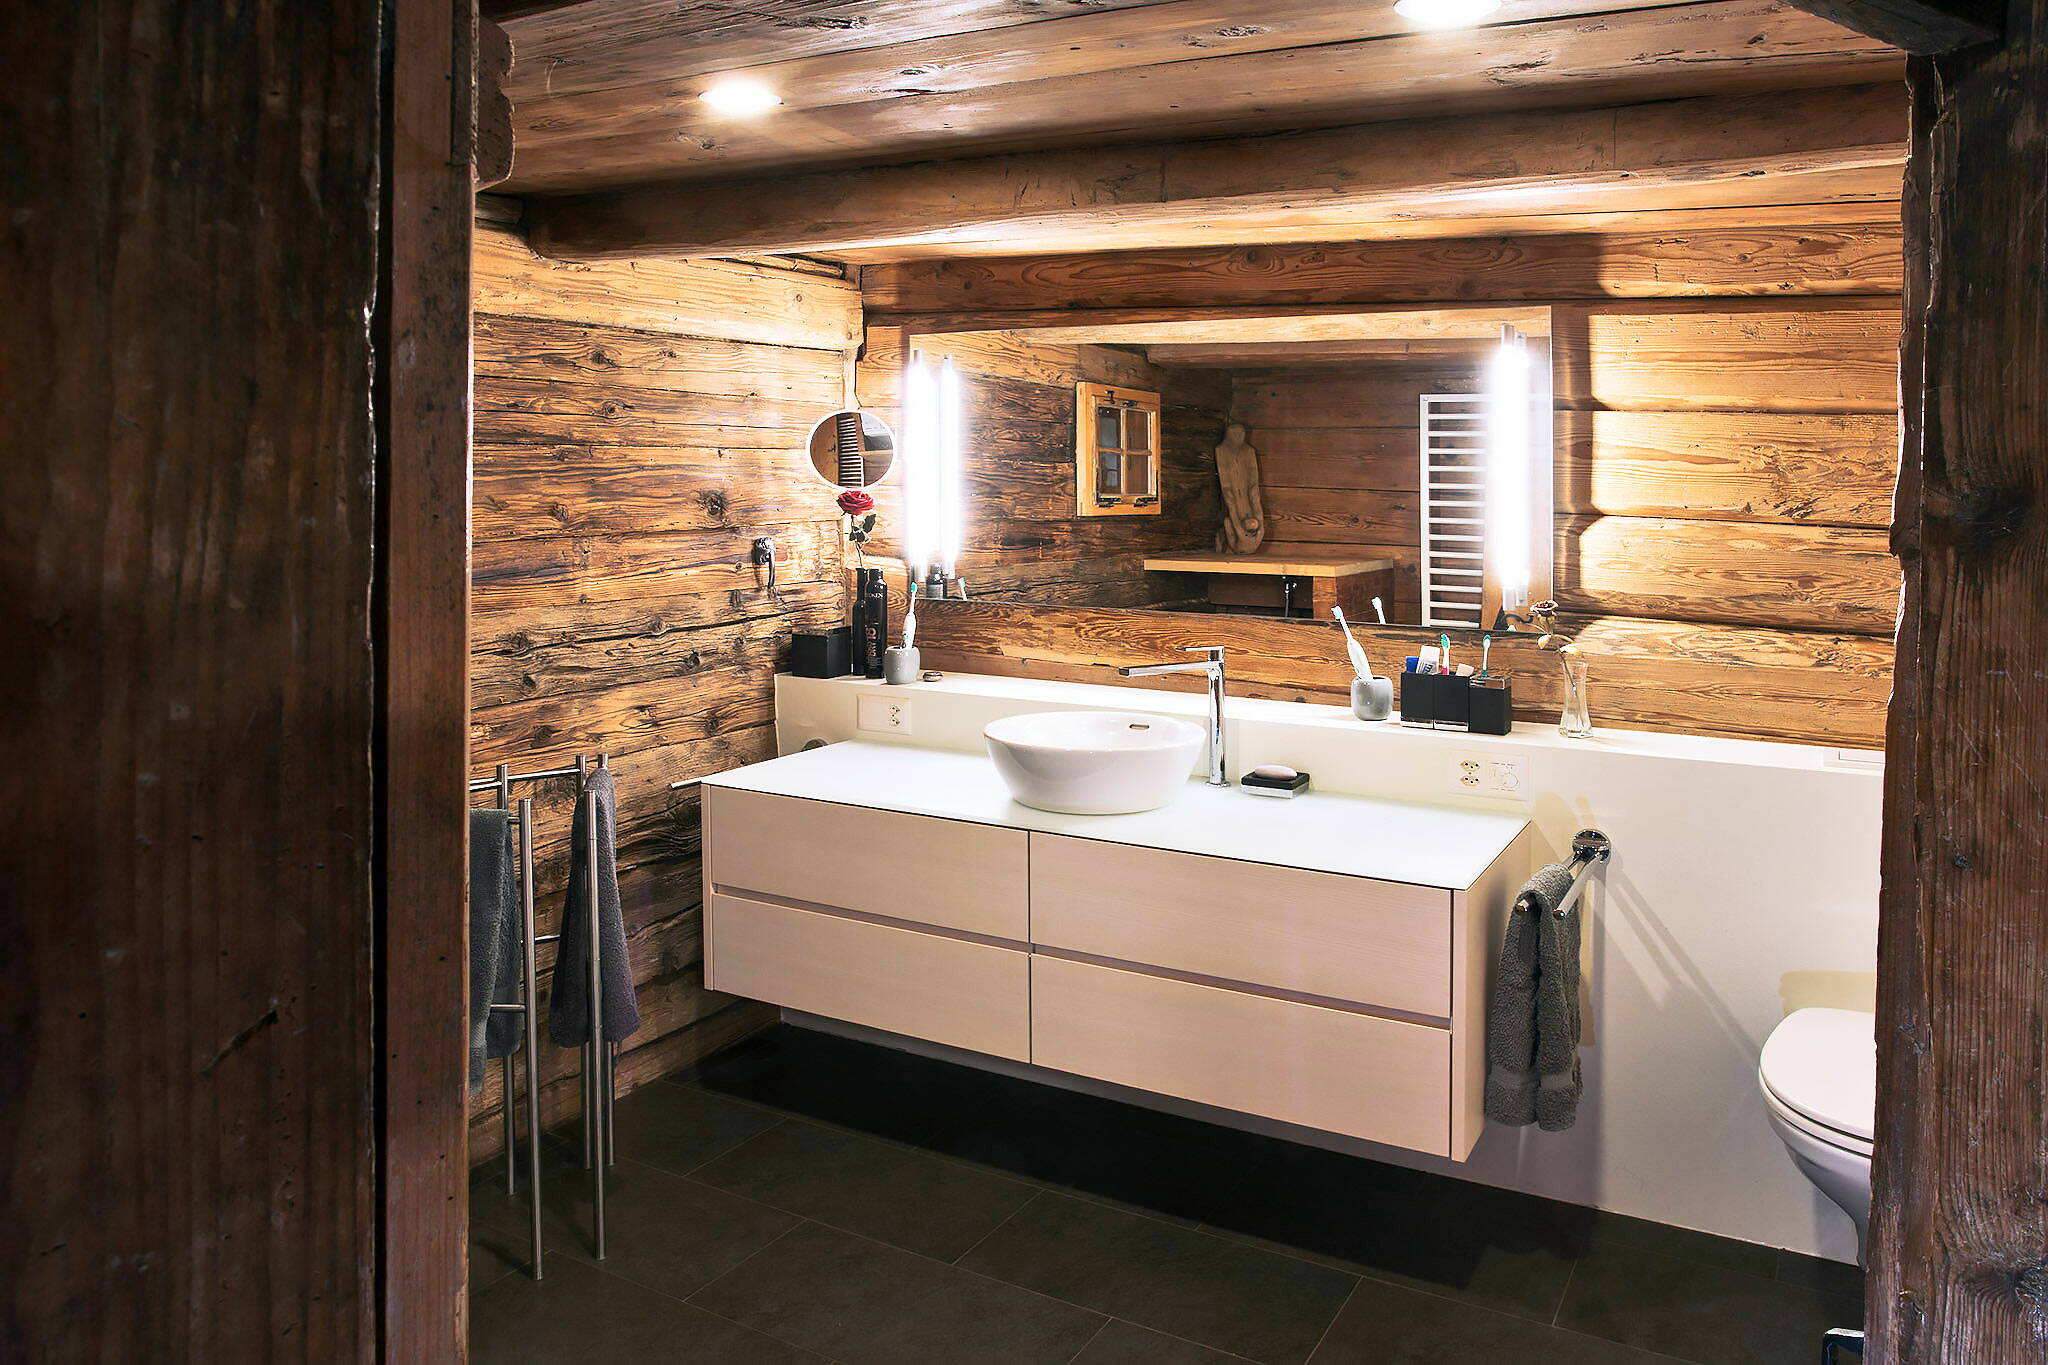 Zoom: Einsicht in ein Badezimmer mit alten Holzwänden und moderner Sanitärinstallation.